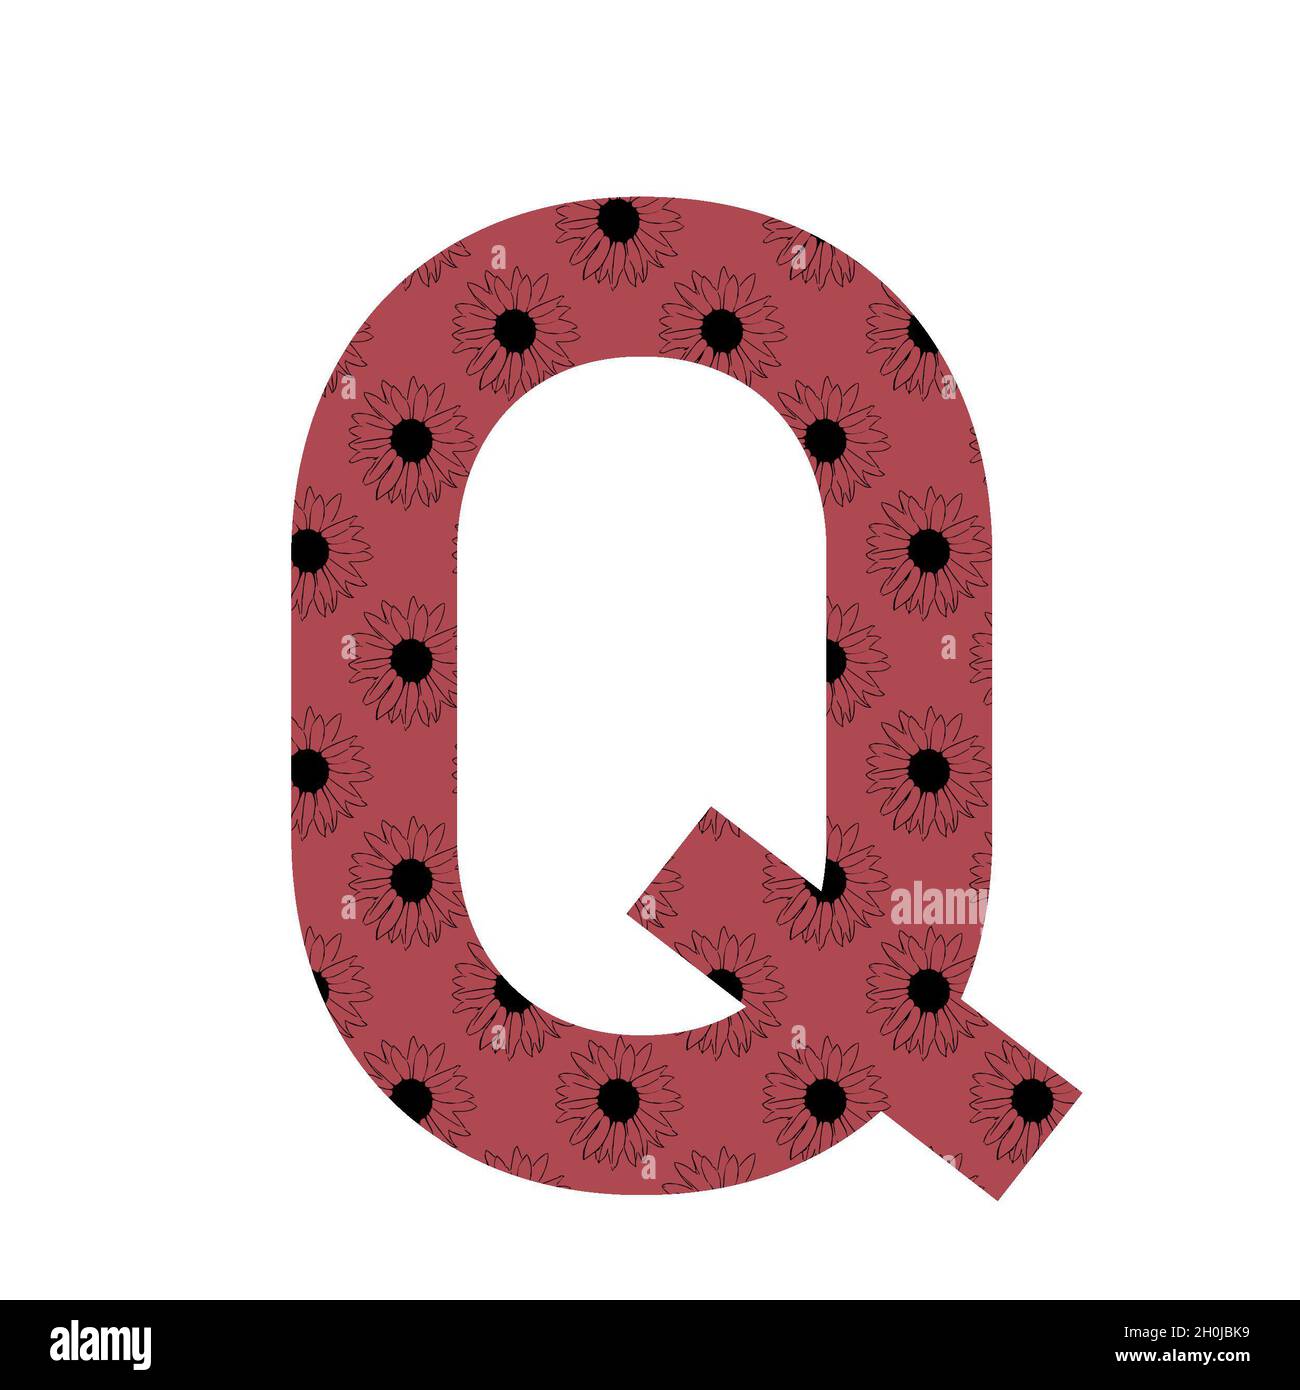 Lettera Q dell'alfabeto realizzata con un motivo di girasoli con sfondo rosa scuro, isolato su sfondo bianco Foto Stock